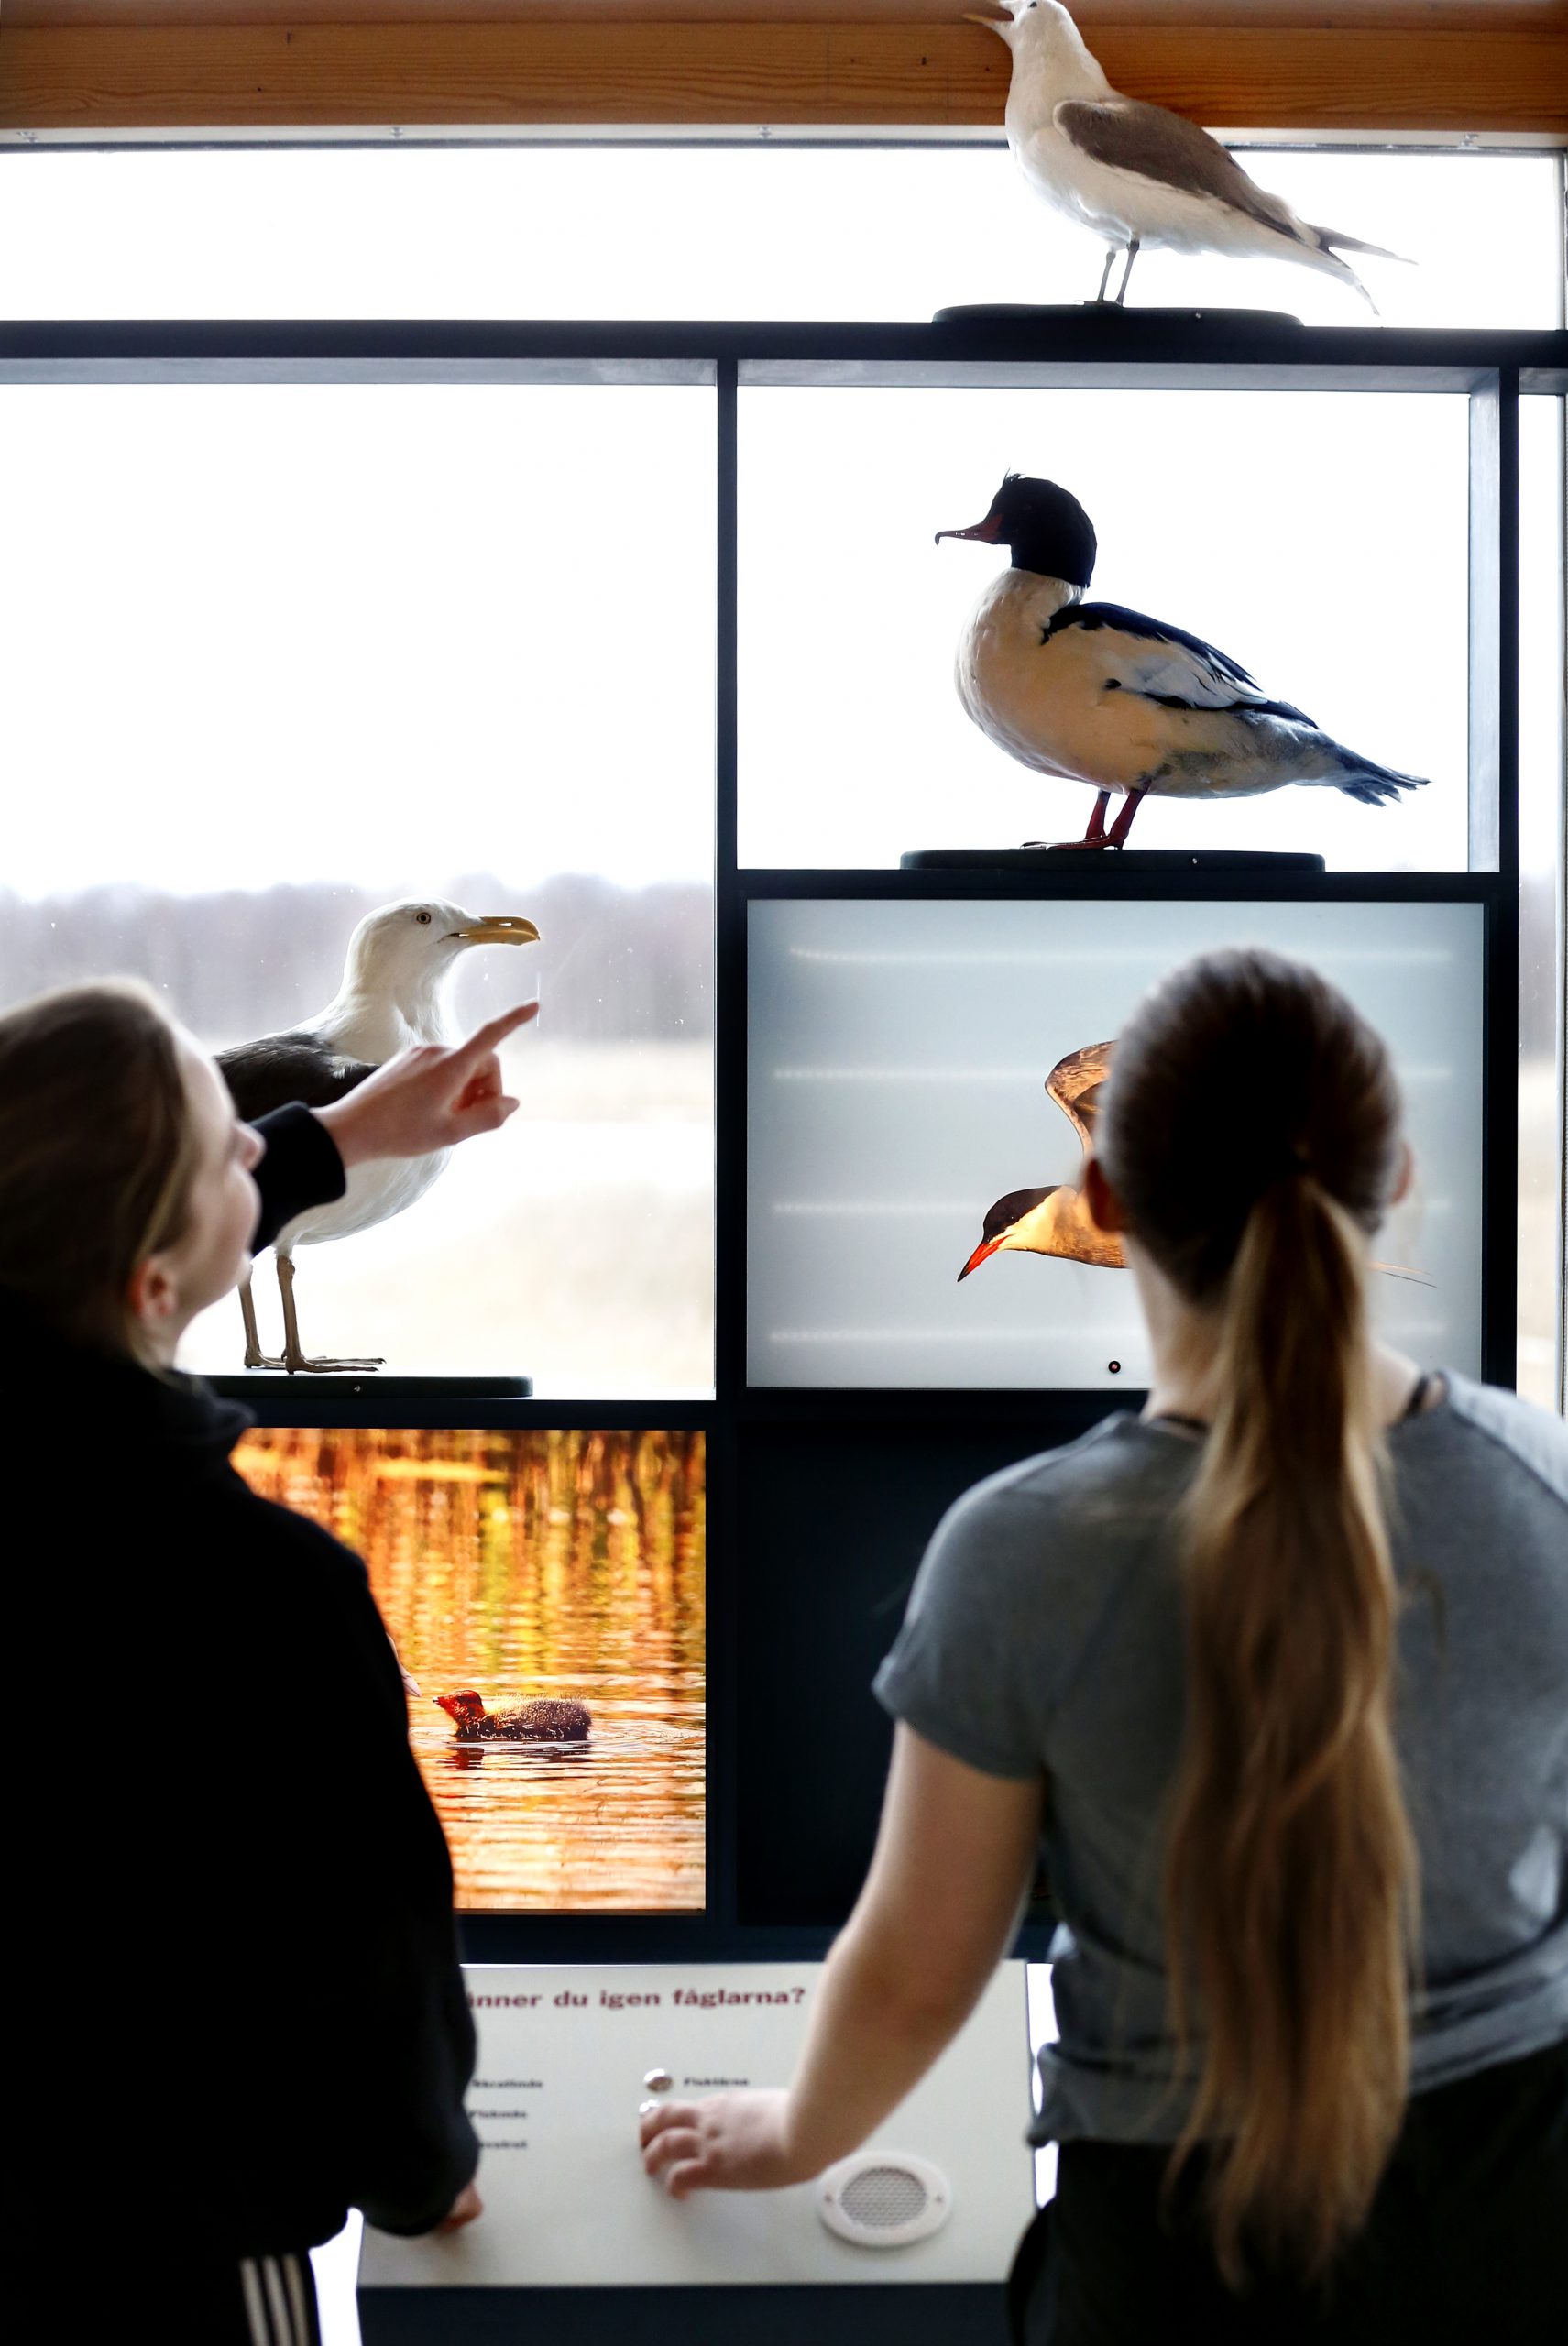 Två tonårstjejer tittar på uppstoppad fågel i utställningen i Naturum Värmland.